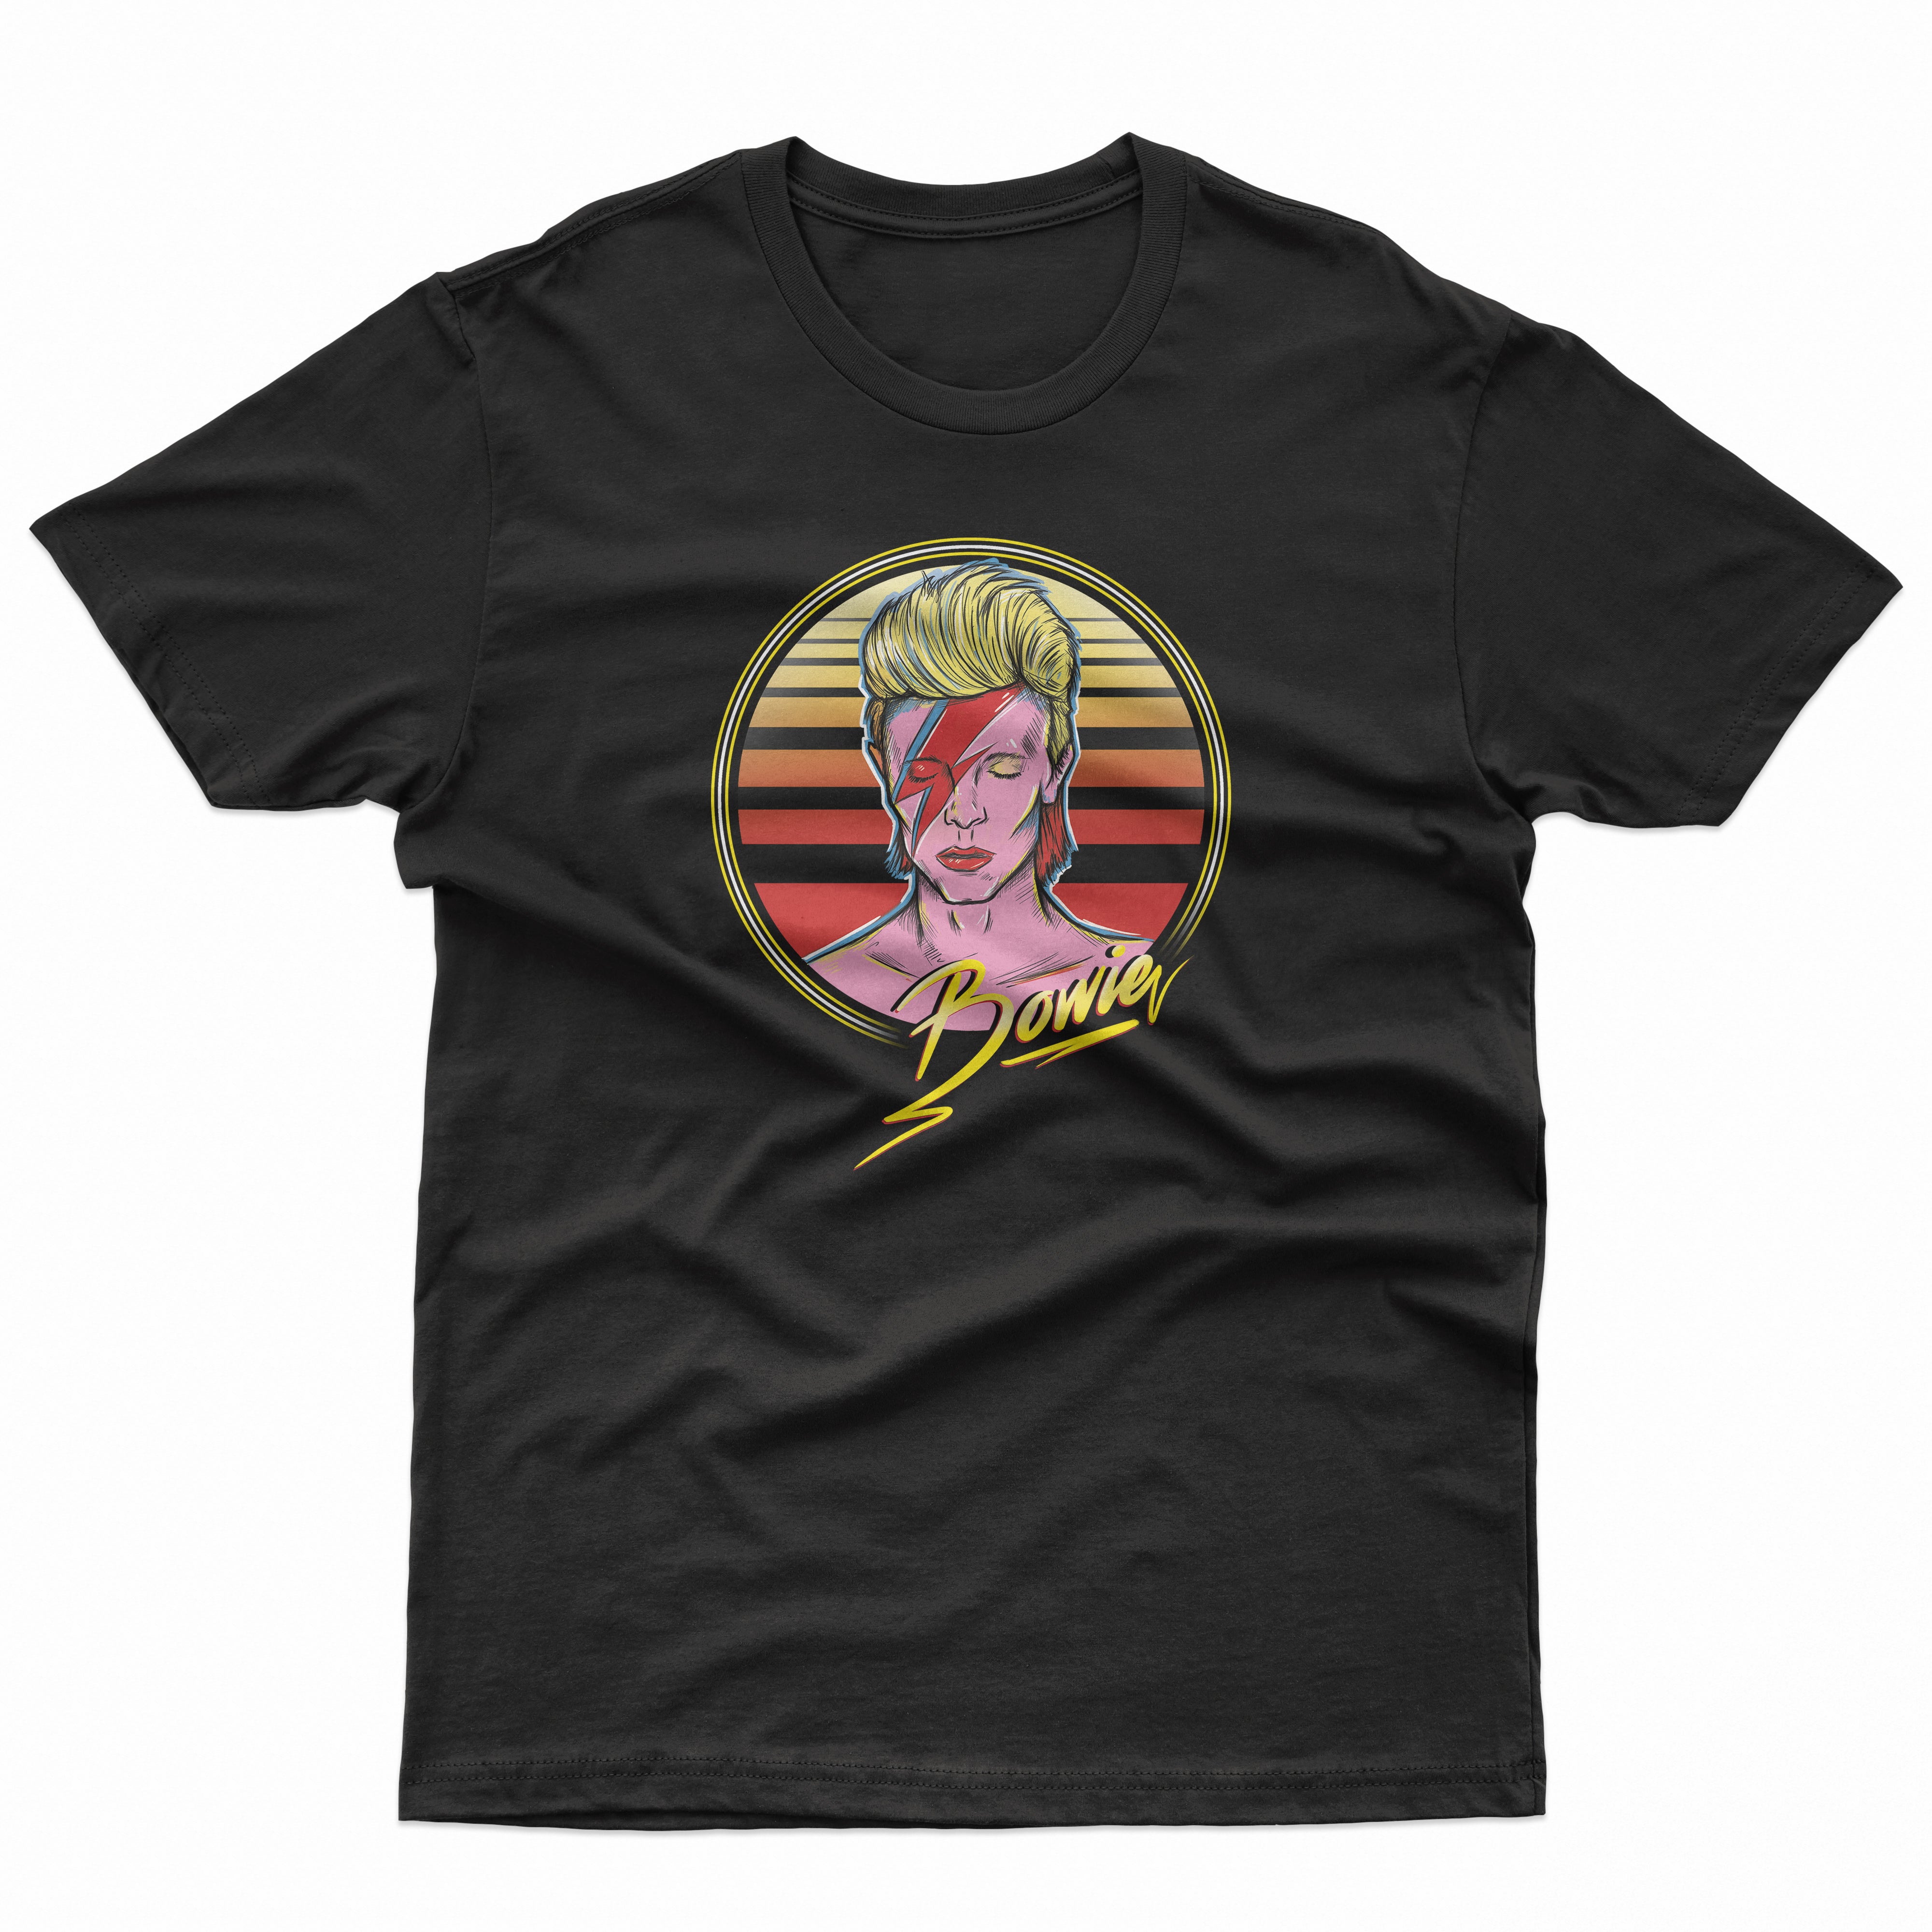 Ziggy Stardust Inspired T Shirt